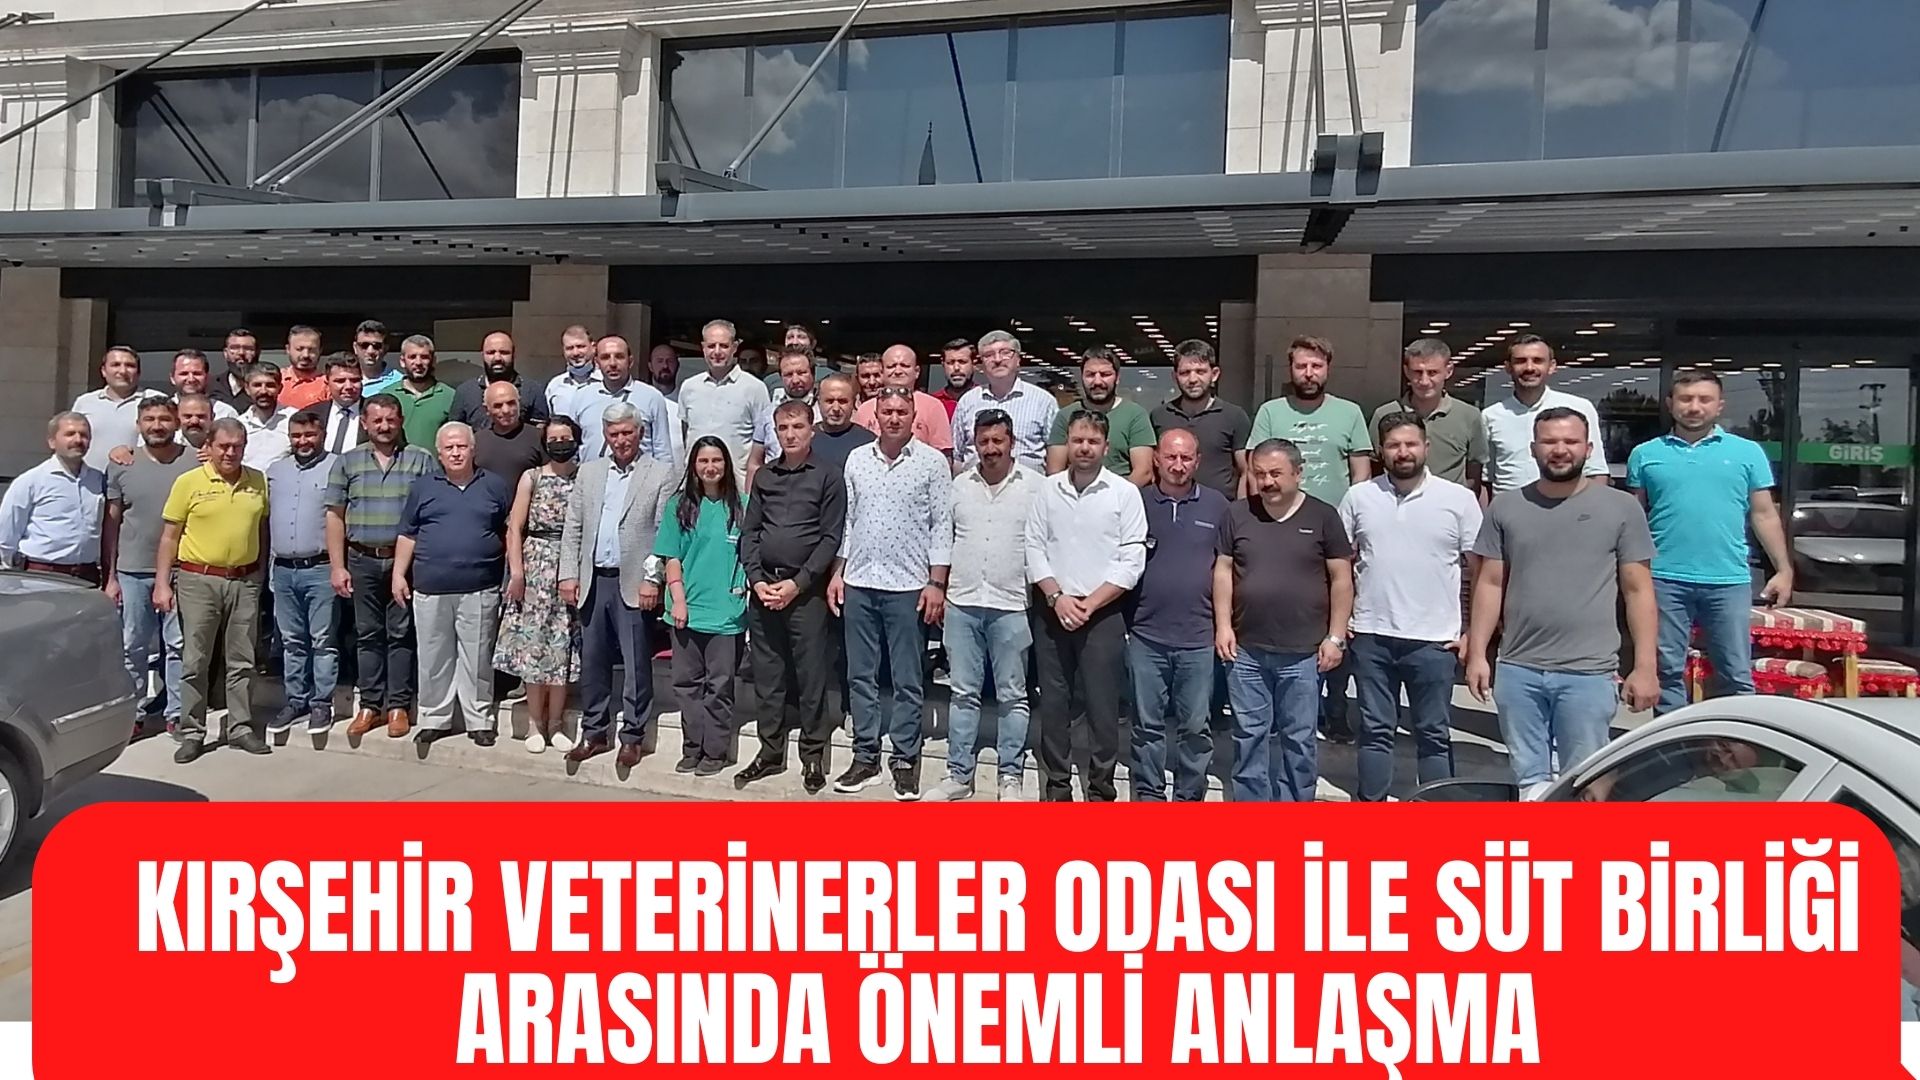 Kırşehir Veterinerler Odası ile Süt Birliği arasında anlaşma